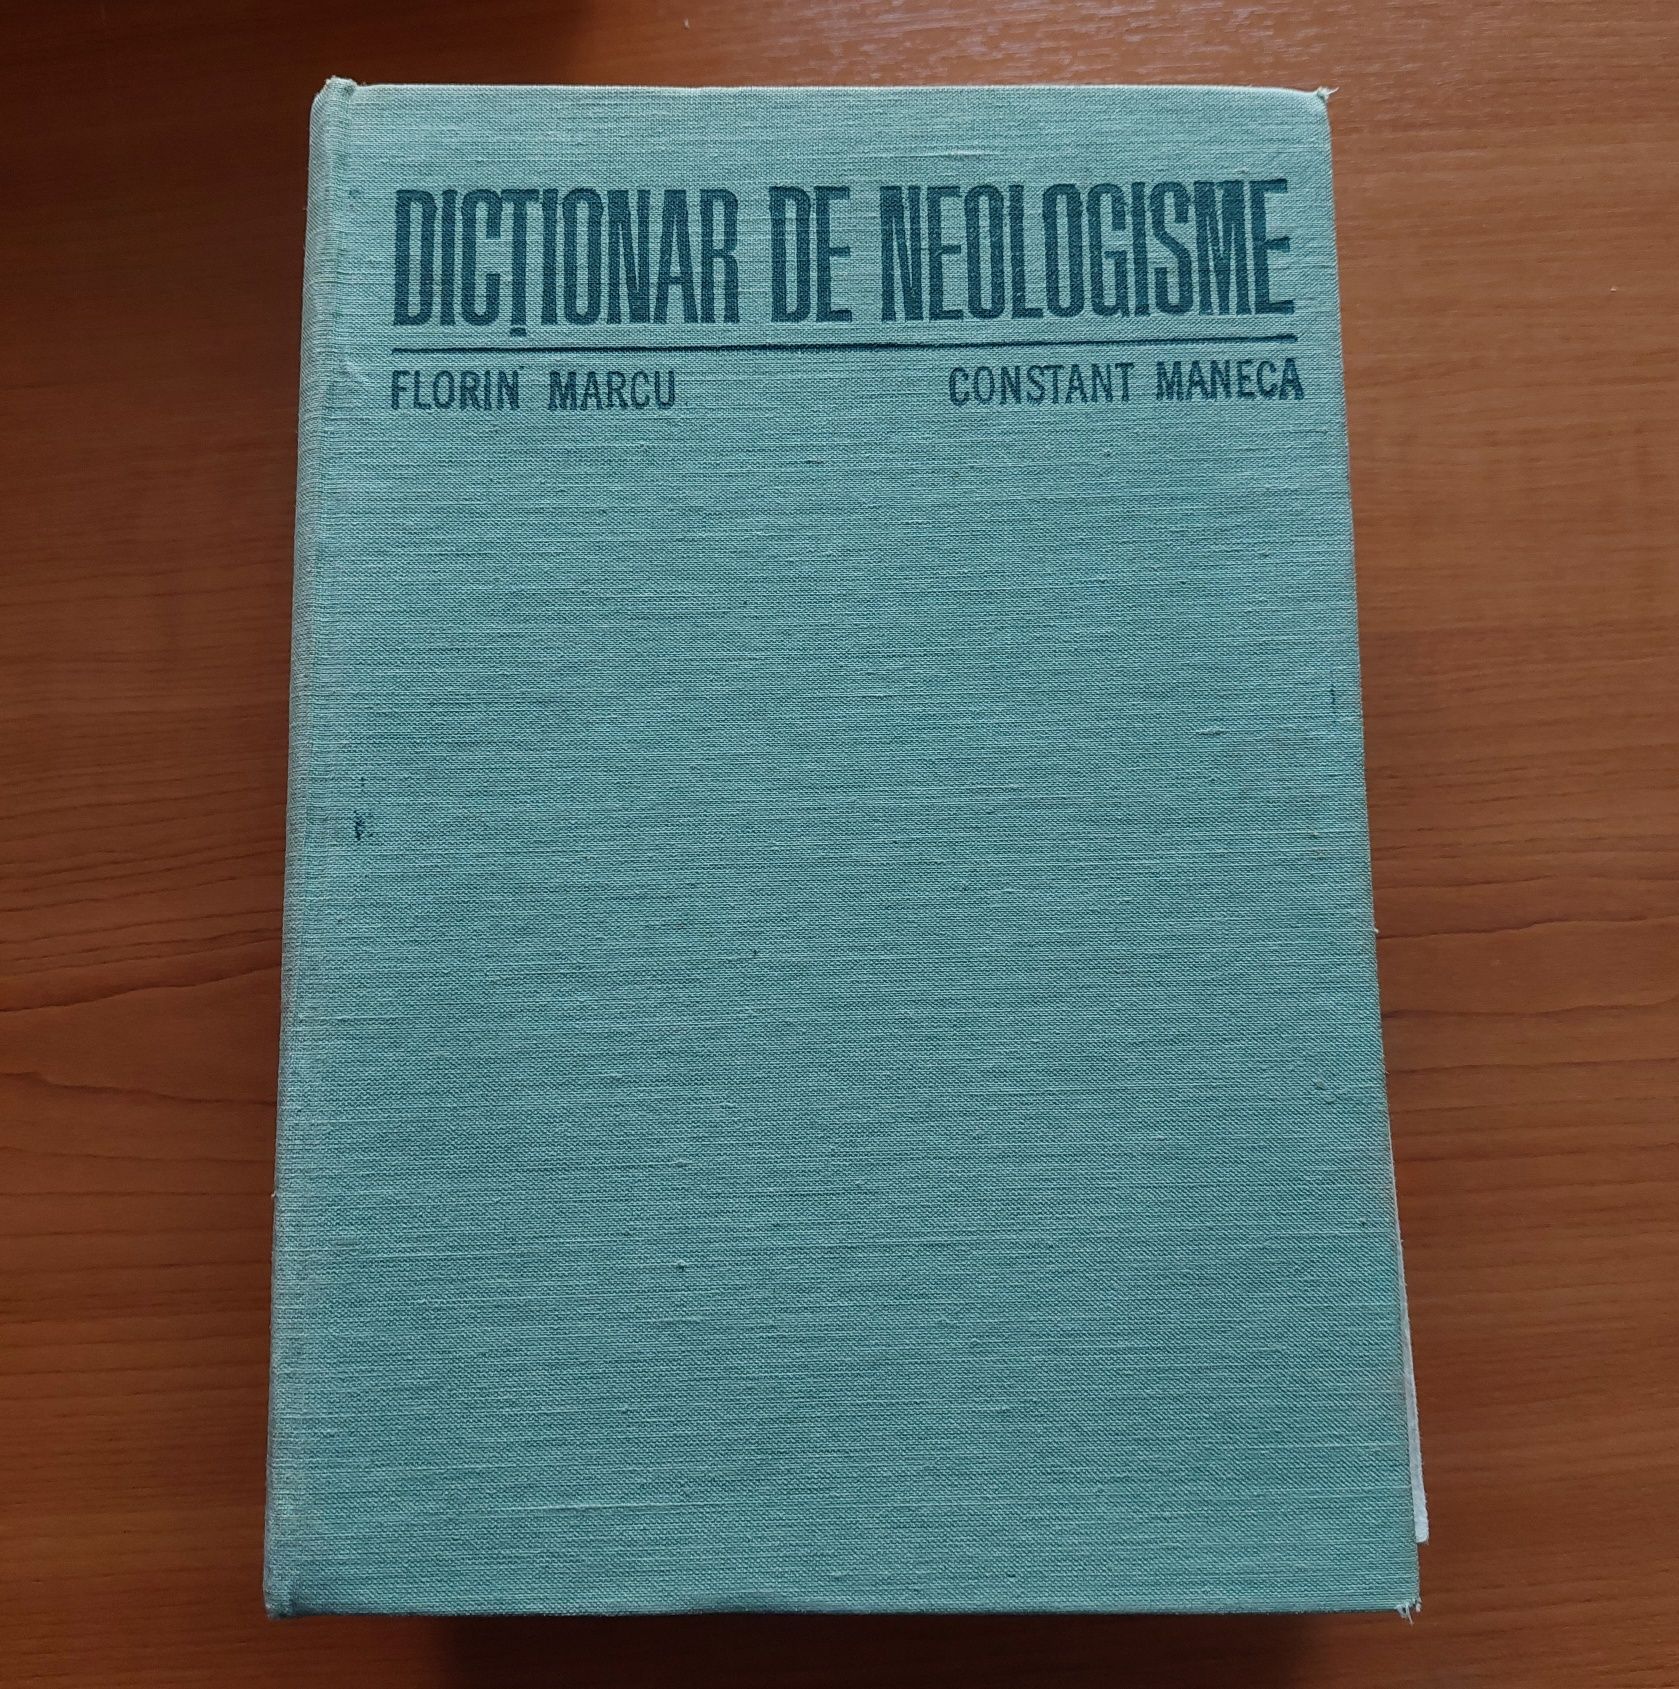 Vând dicționar de neologisme (vechi)